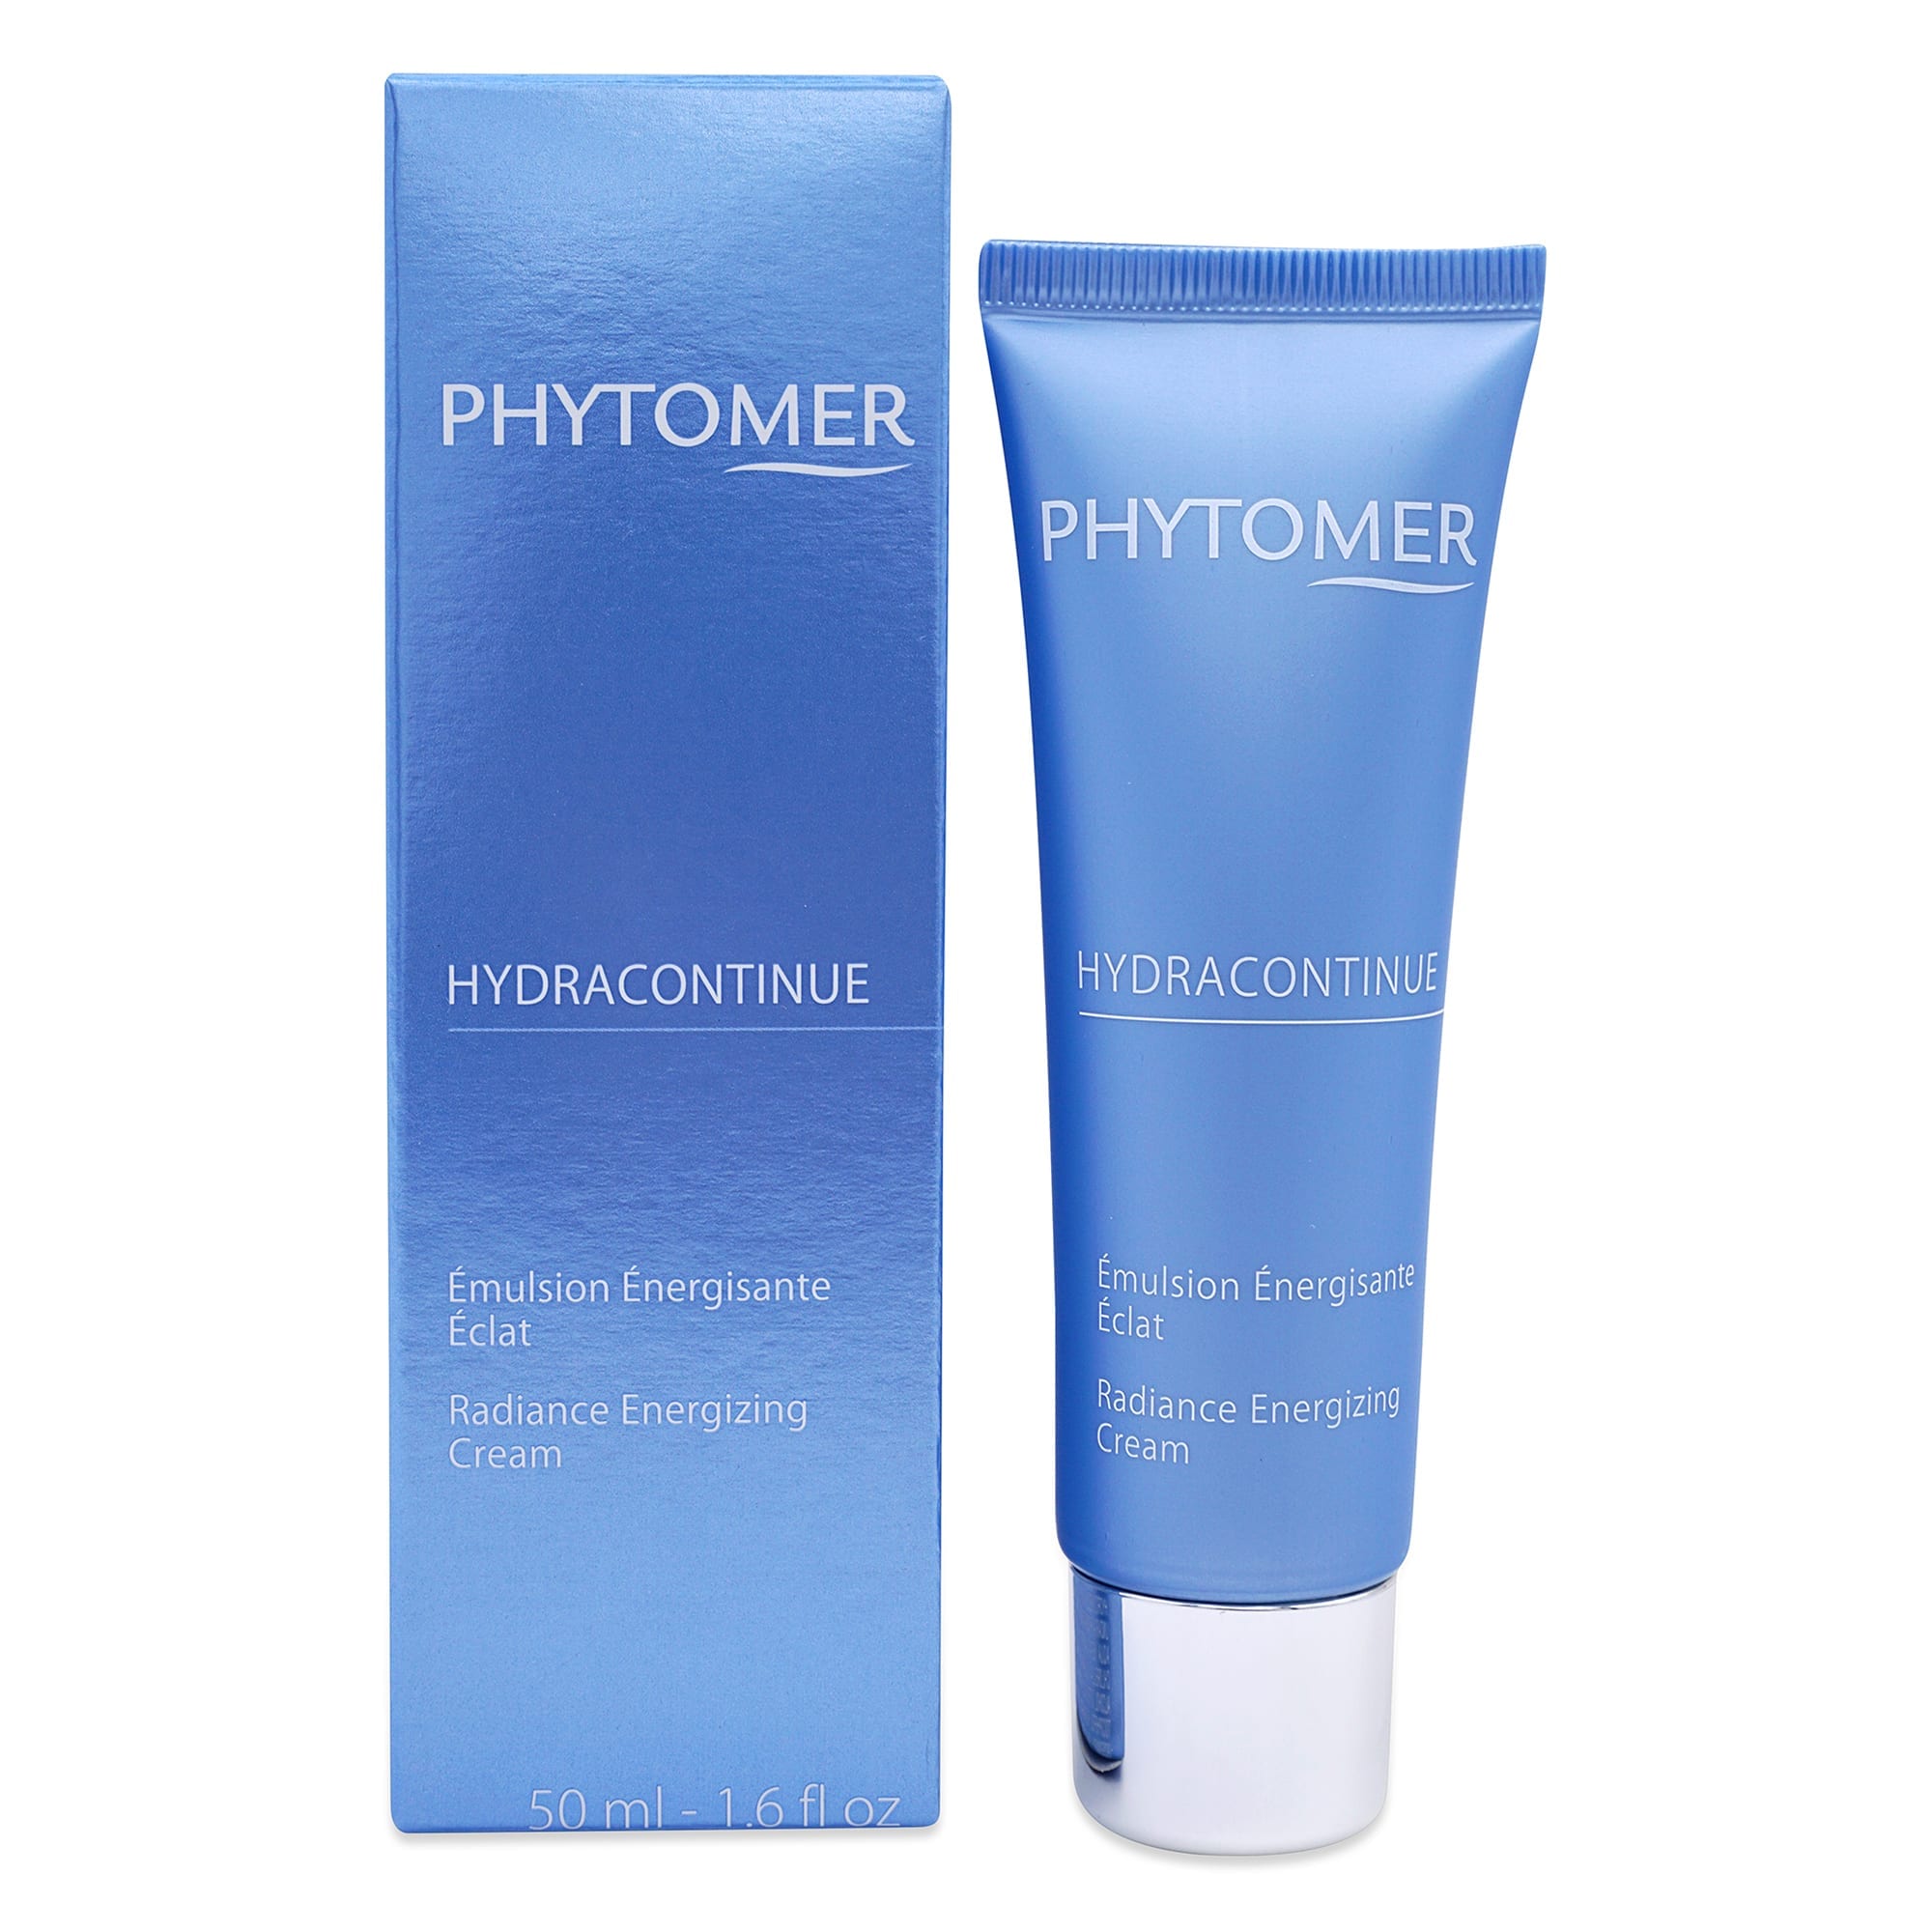 Phytomer Hydracontinue Radiance Energizing Cream, 1.6 oz.